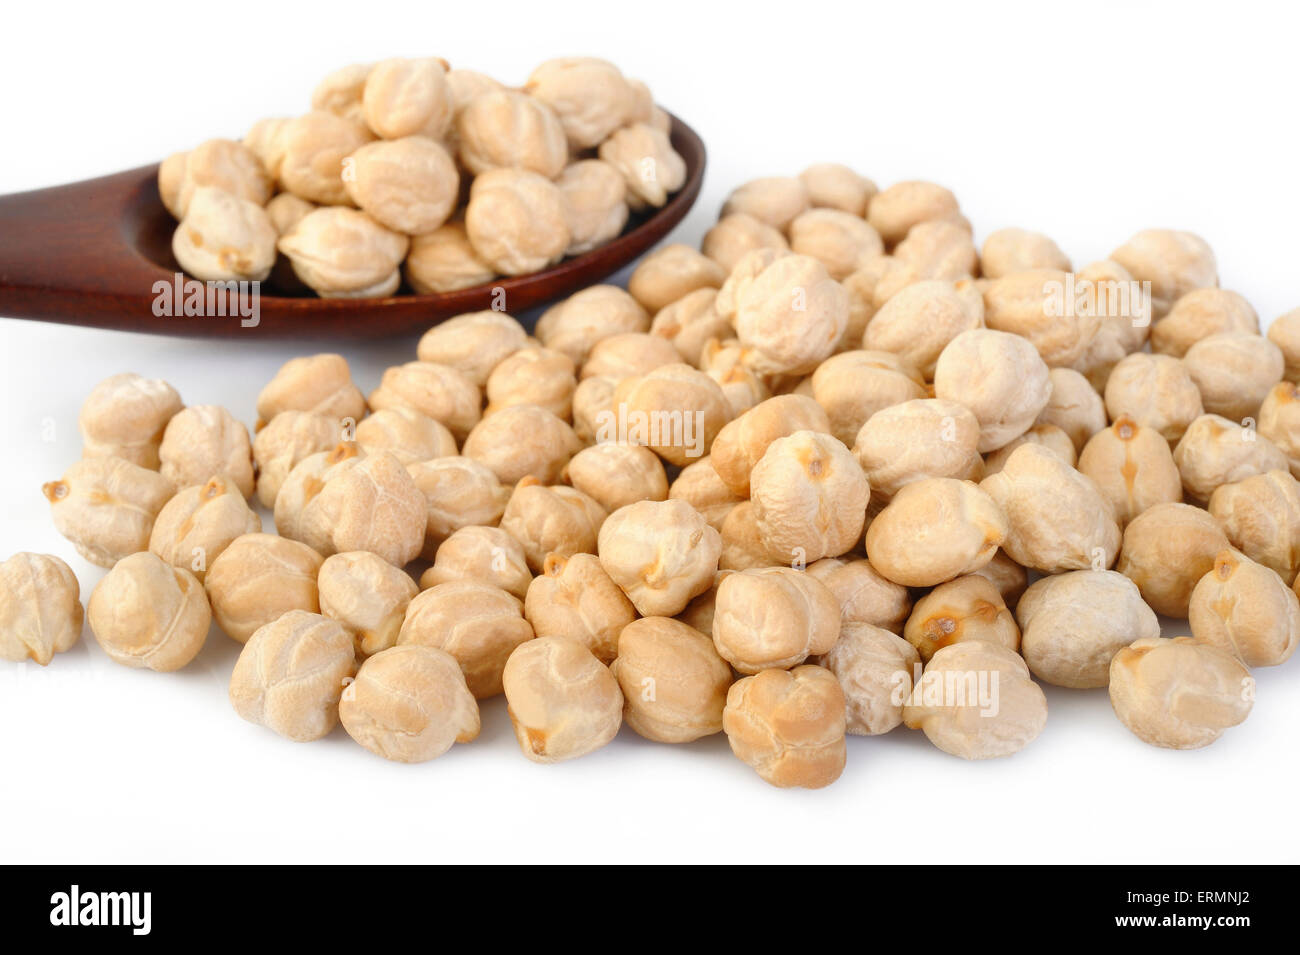 garbanzo beans on white background Stock Photo